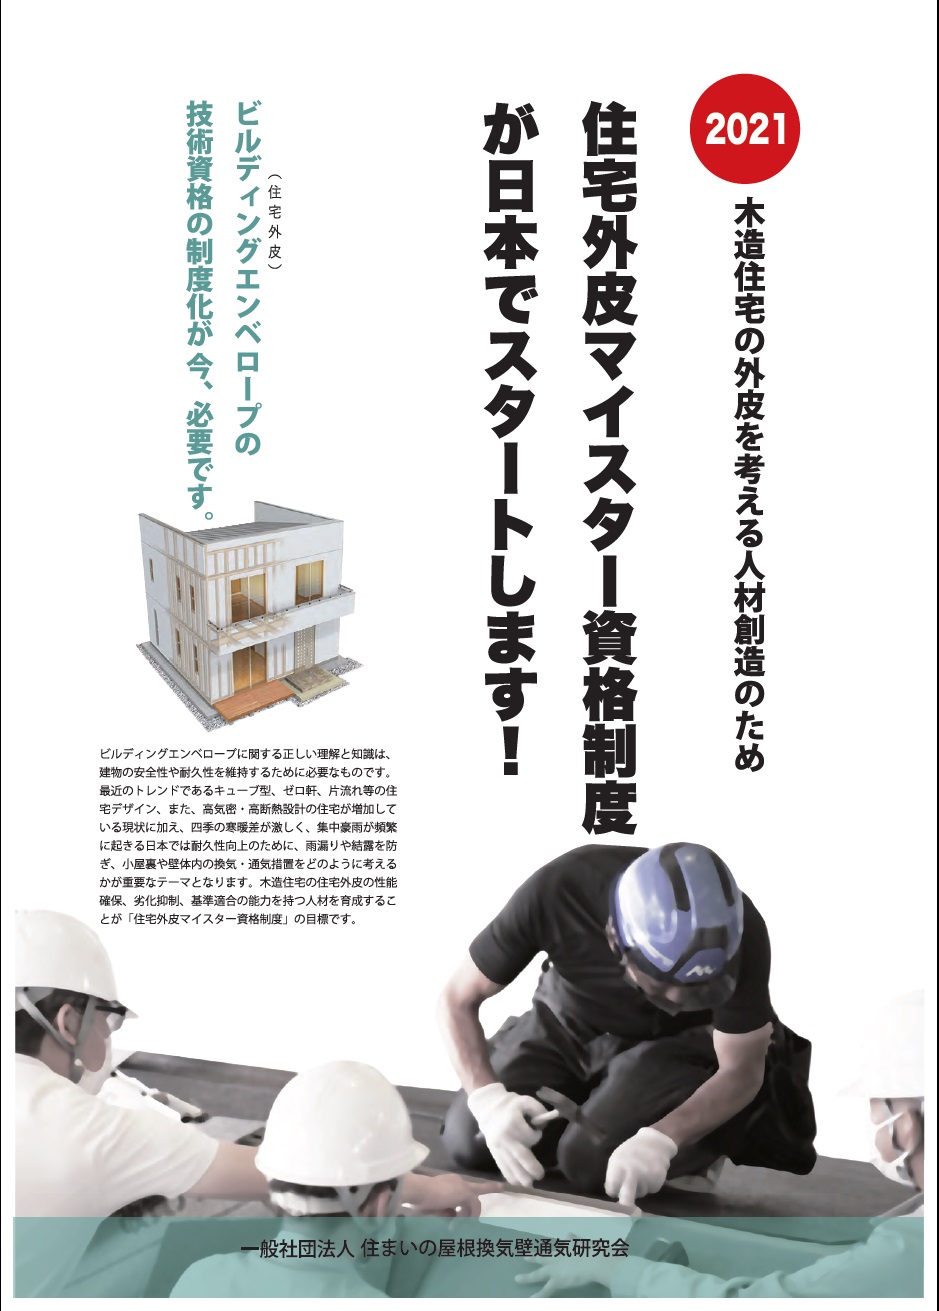 2021住宅外皮マイスター資格制度が日本でスタート